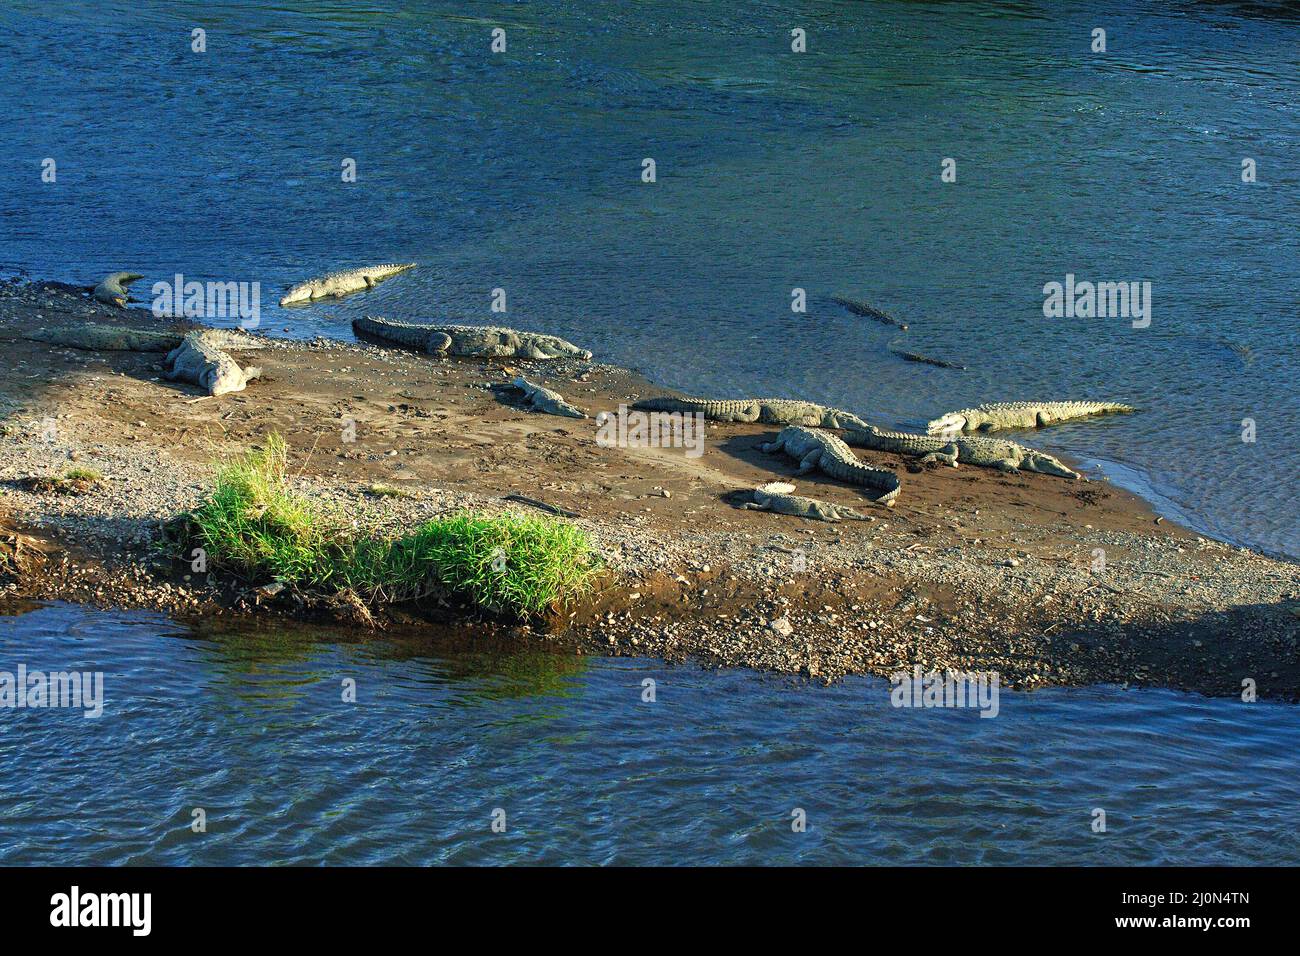 El cocodrilo de agua salada (Crocodylus porosus), Río Térraba, Costa Rica Foto de stock